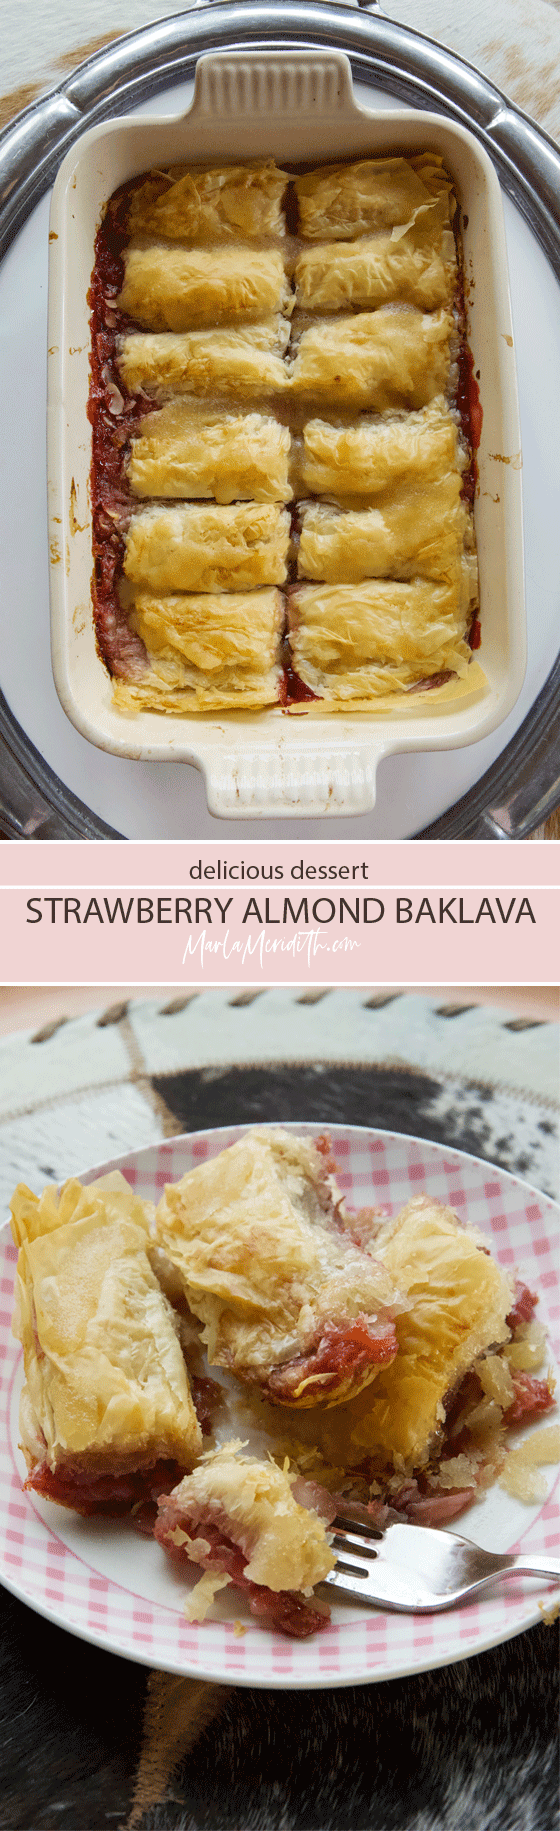 Delicious Strawberry Almond Baklava recipe